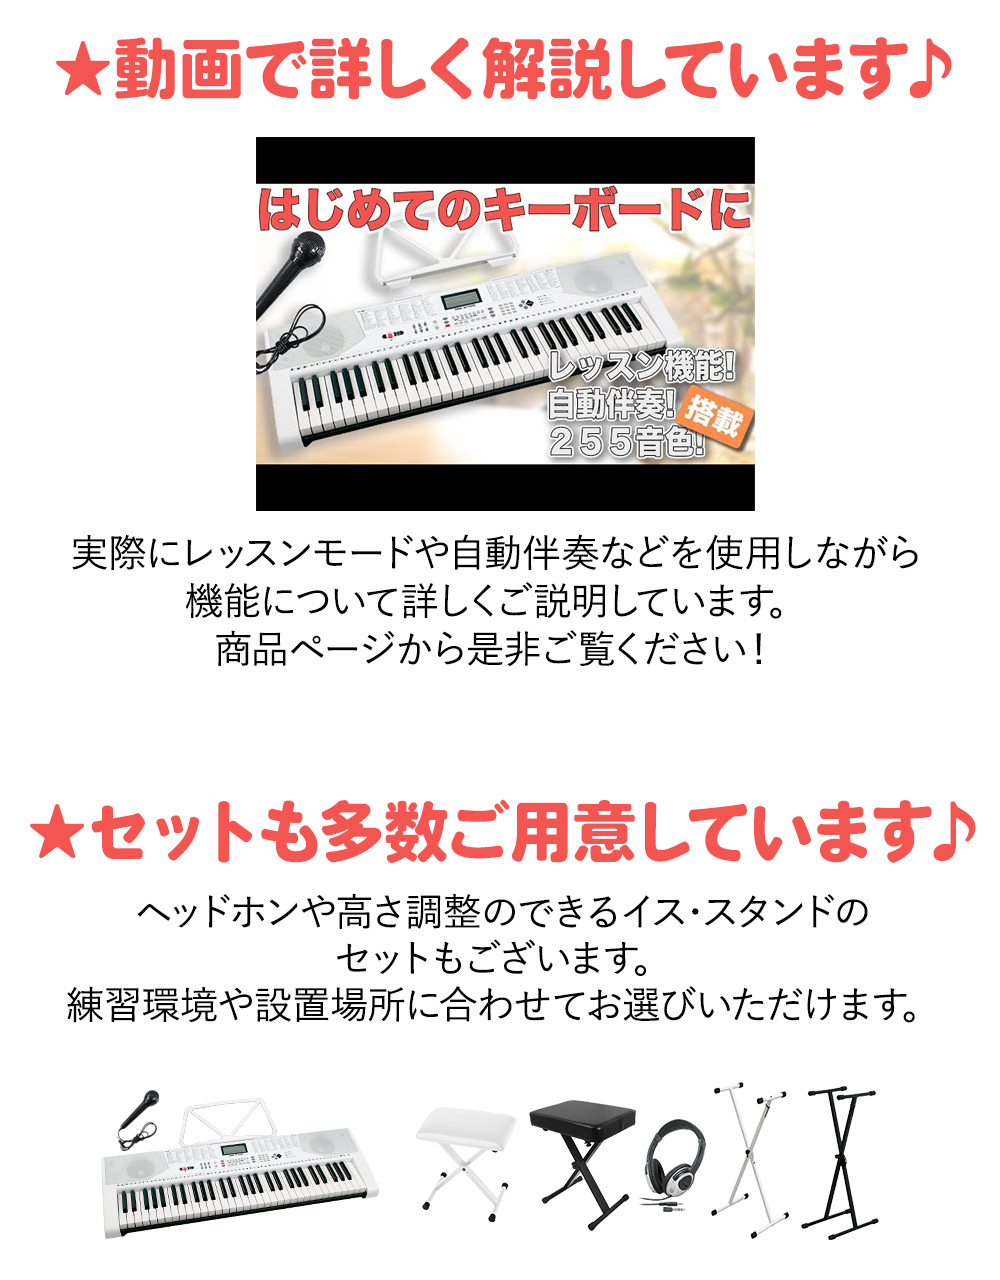 JOY MK-2100 白スタンド・白イス・ヘッドホンセット 61鍵盤 マイク 